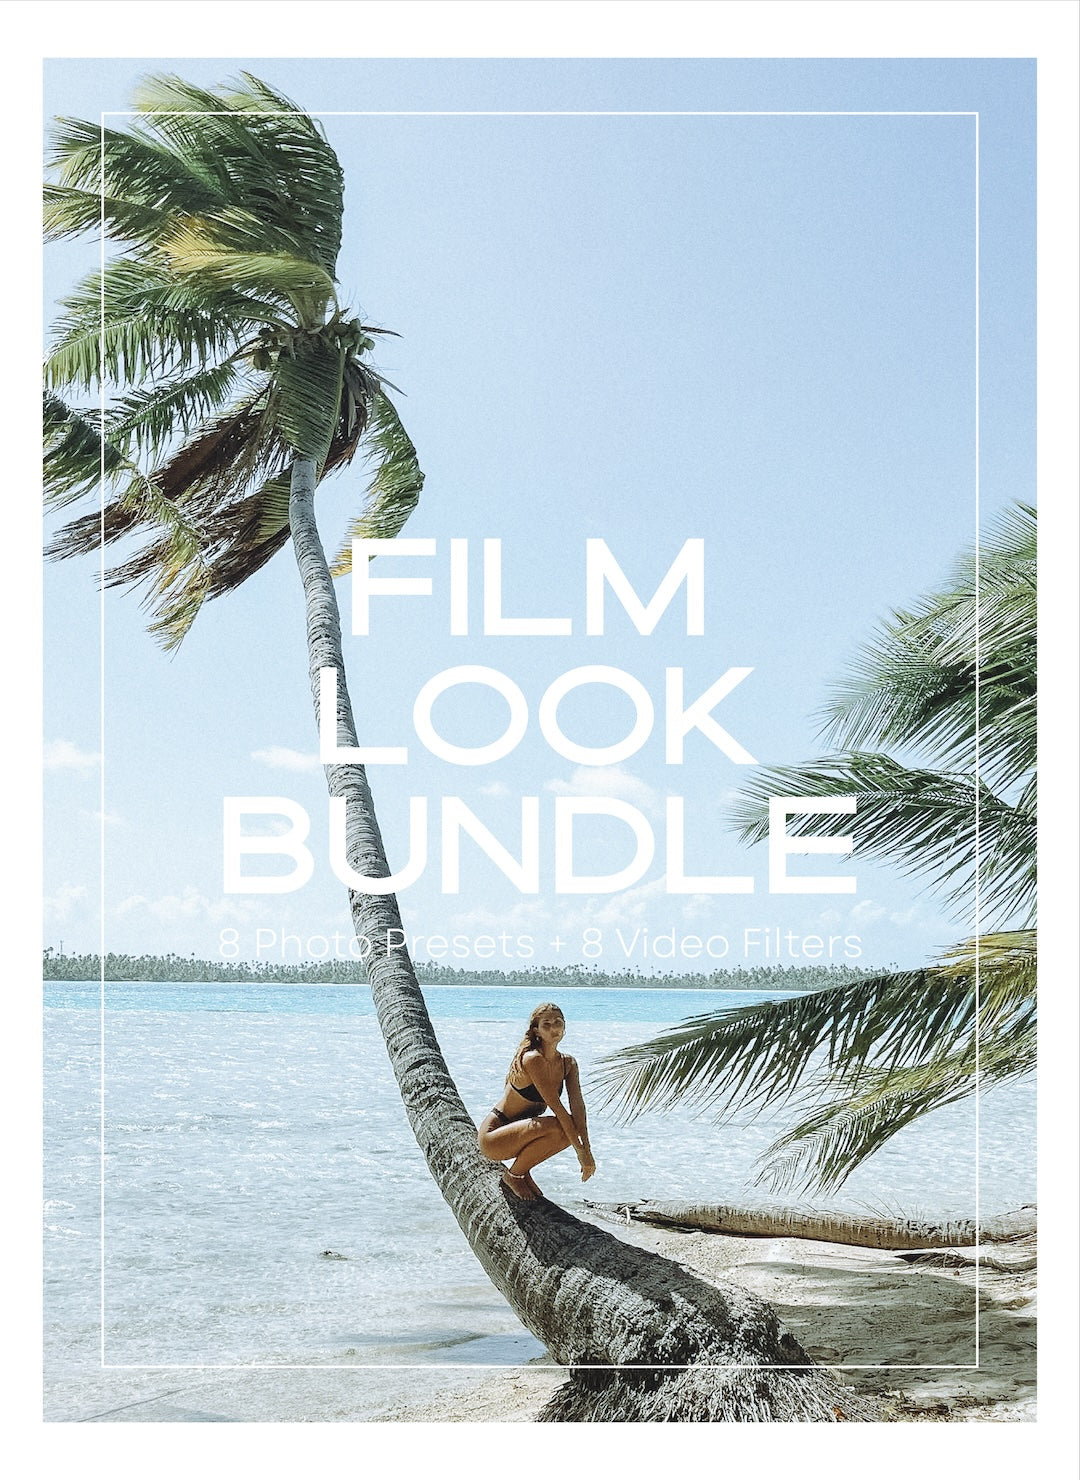 FILM LOOK Bundle (Presets + Video Filters)